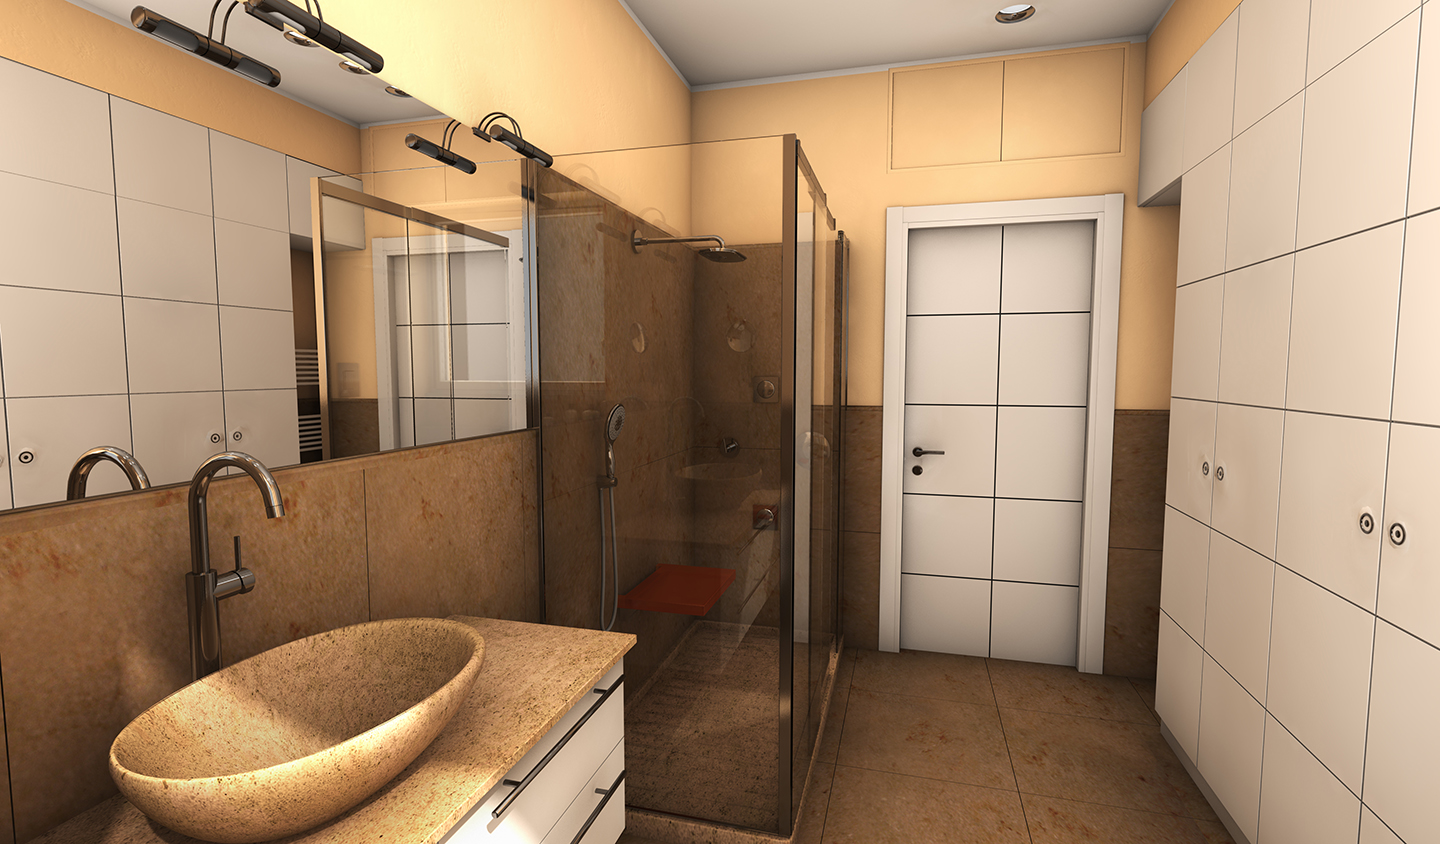 3. Studio progettuale della sala da bagno tramite render grafico tridimensionale: stato di progetto.